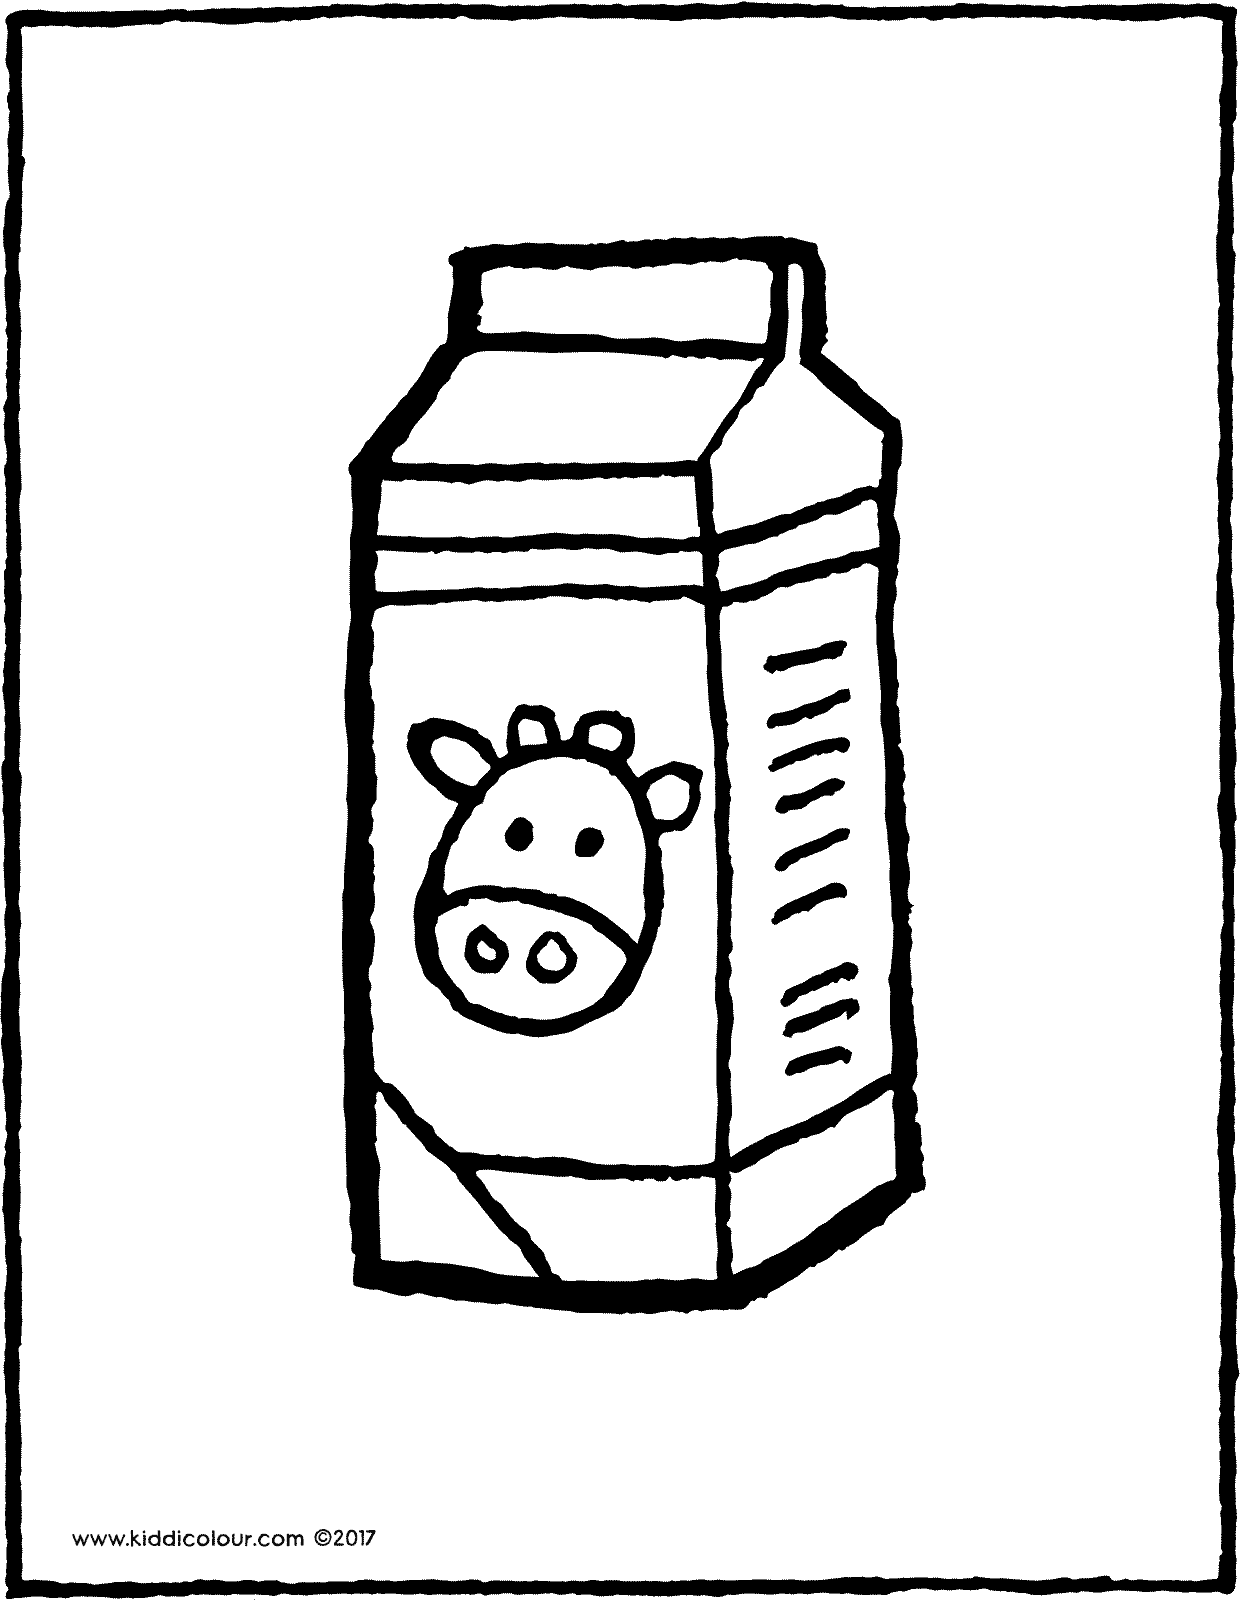 a carton of milk - kiddicolour